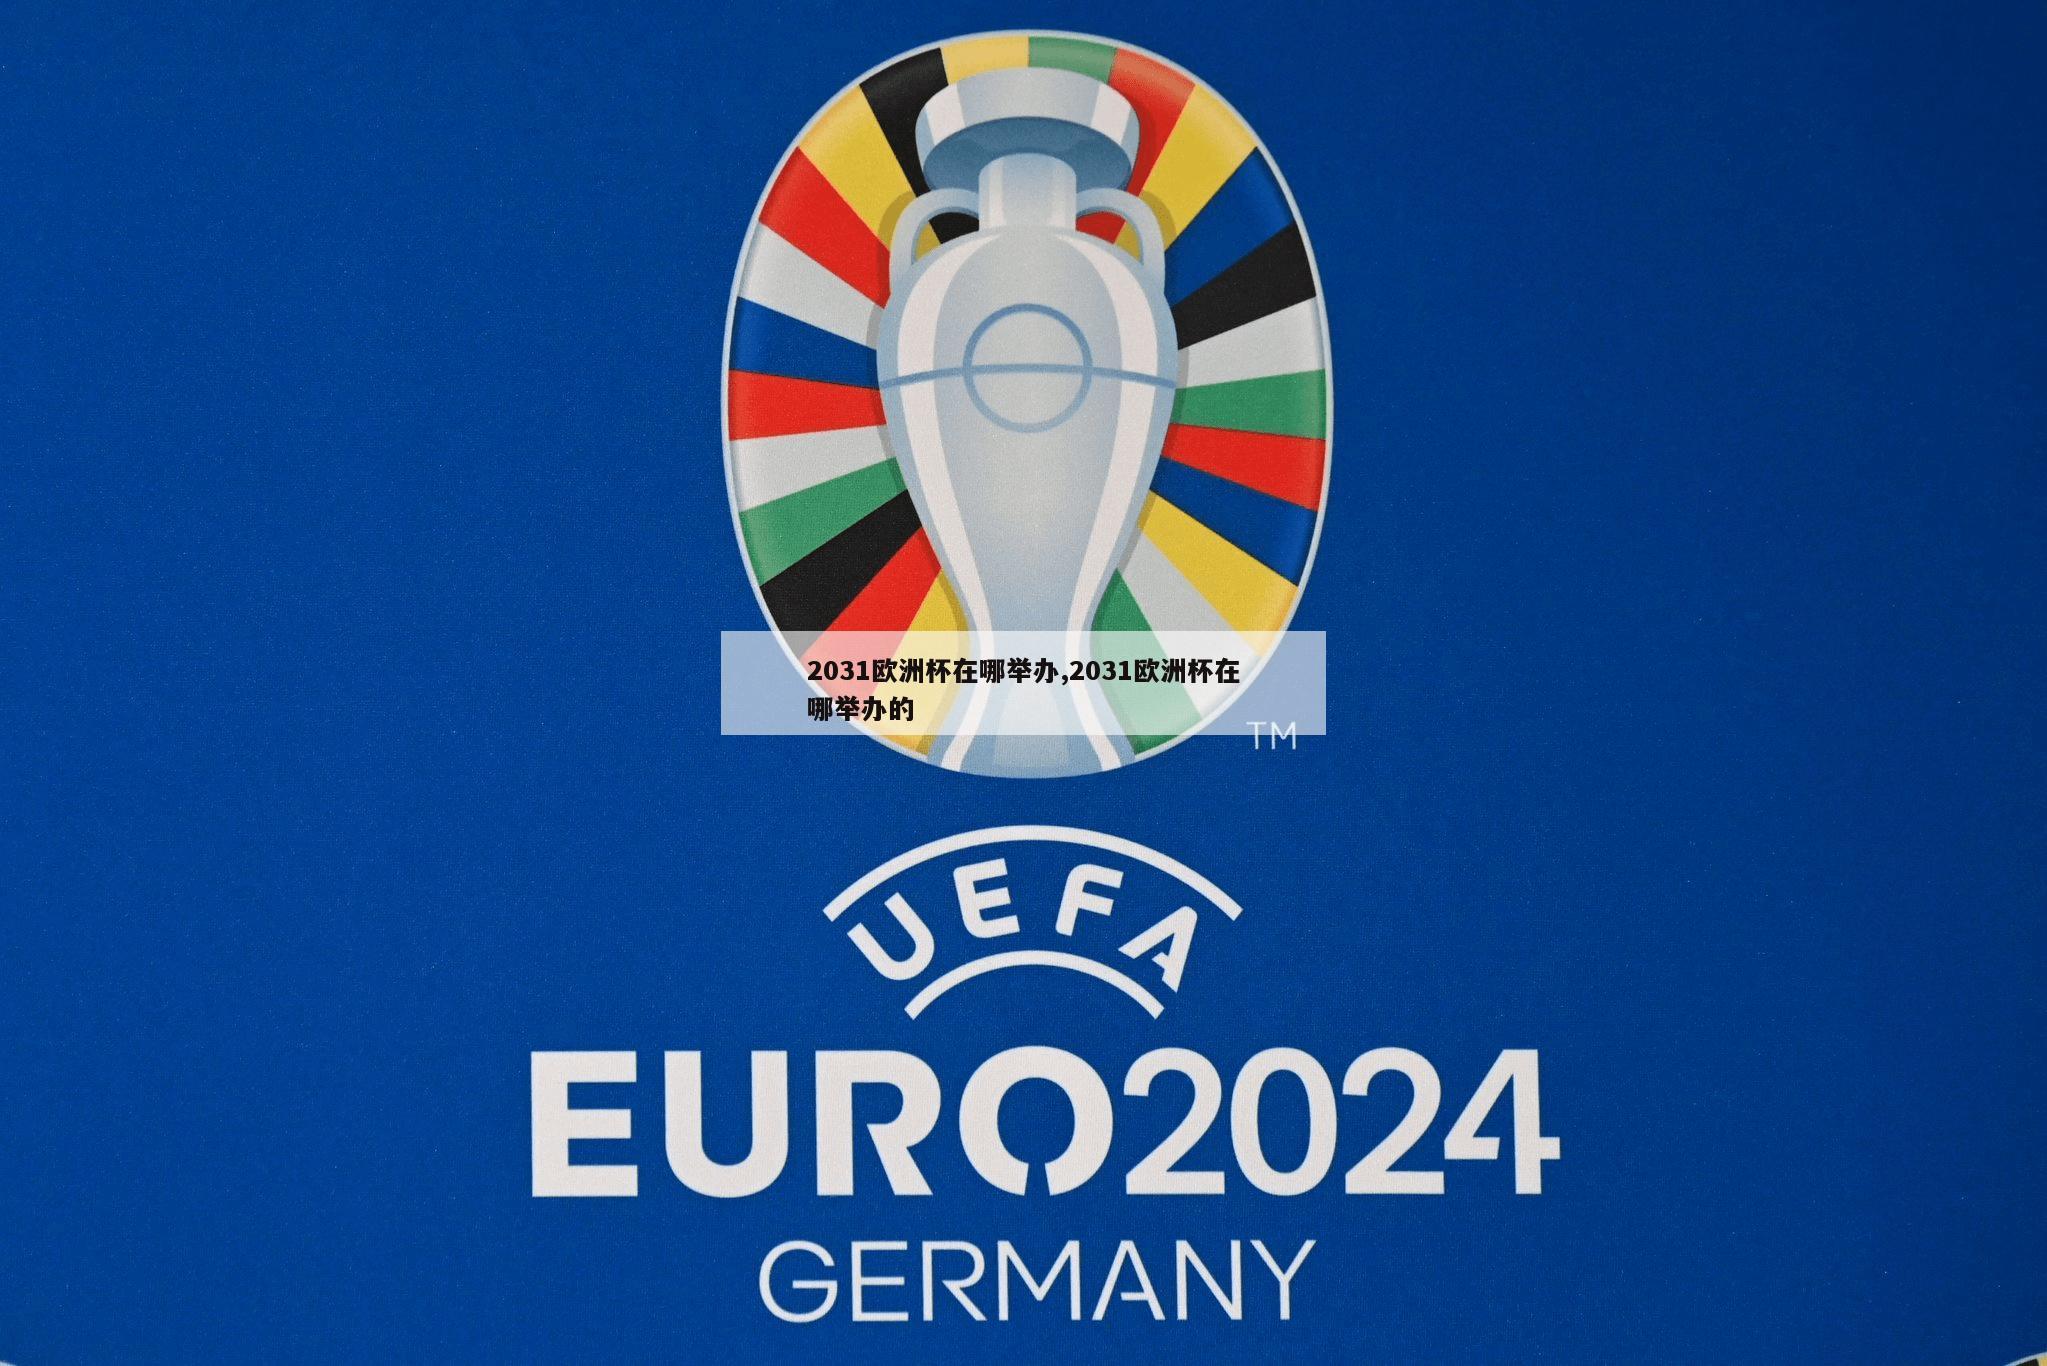 2031欧洲杯在哪举办,2031欧洲杯在哪举办的